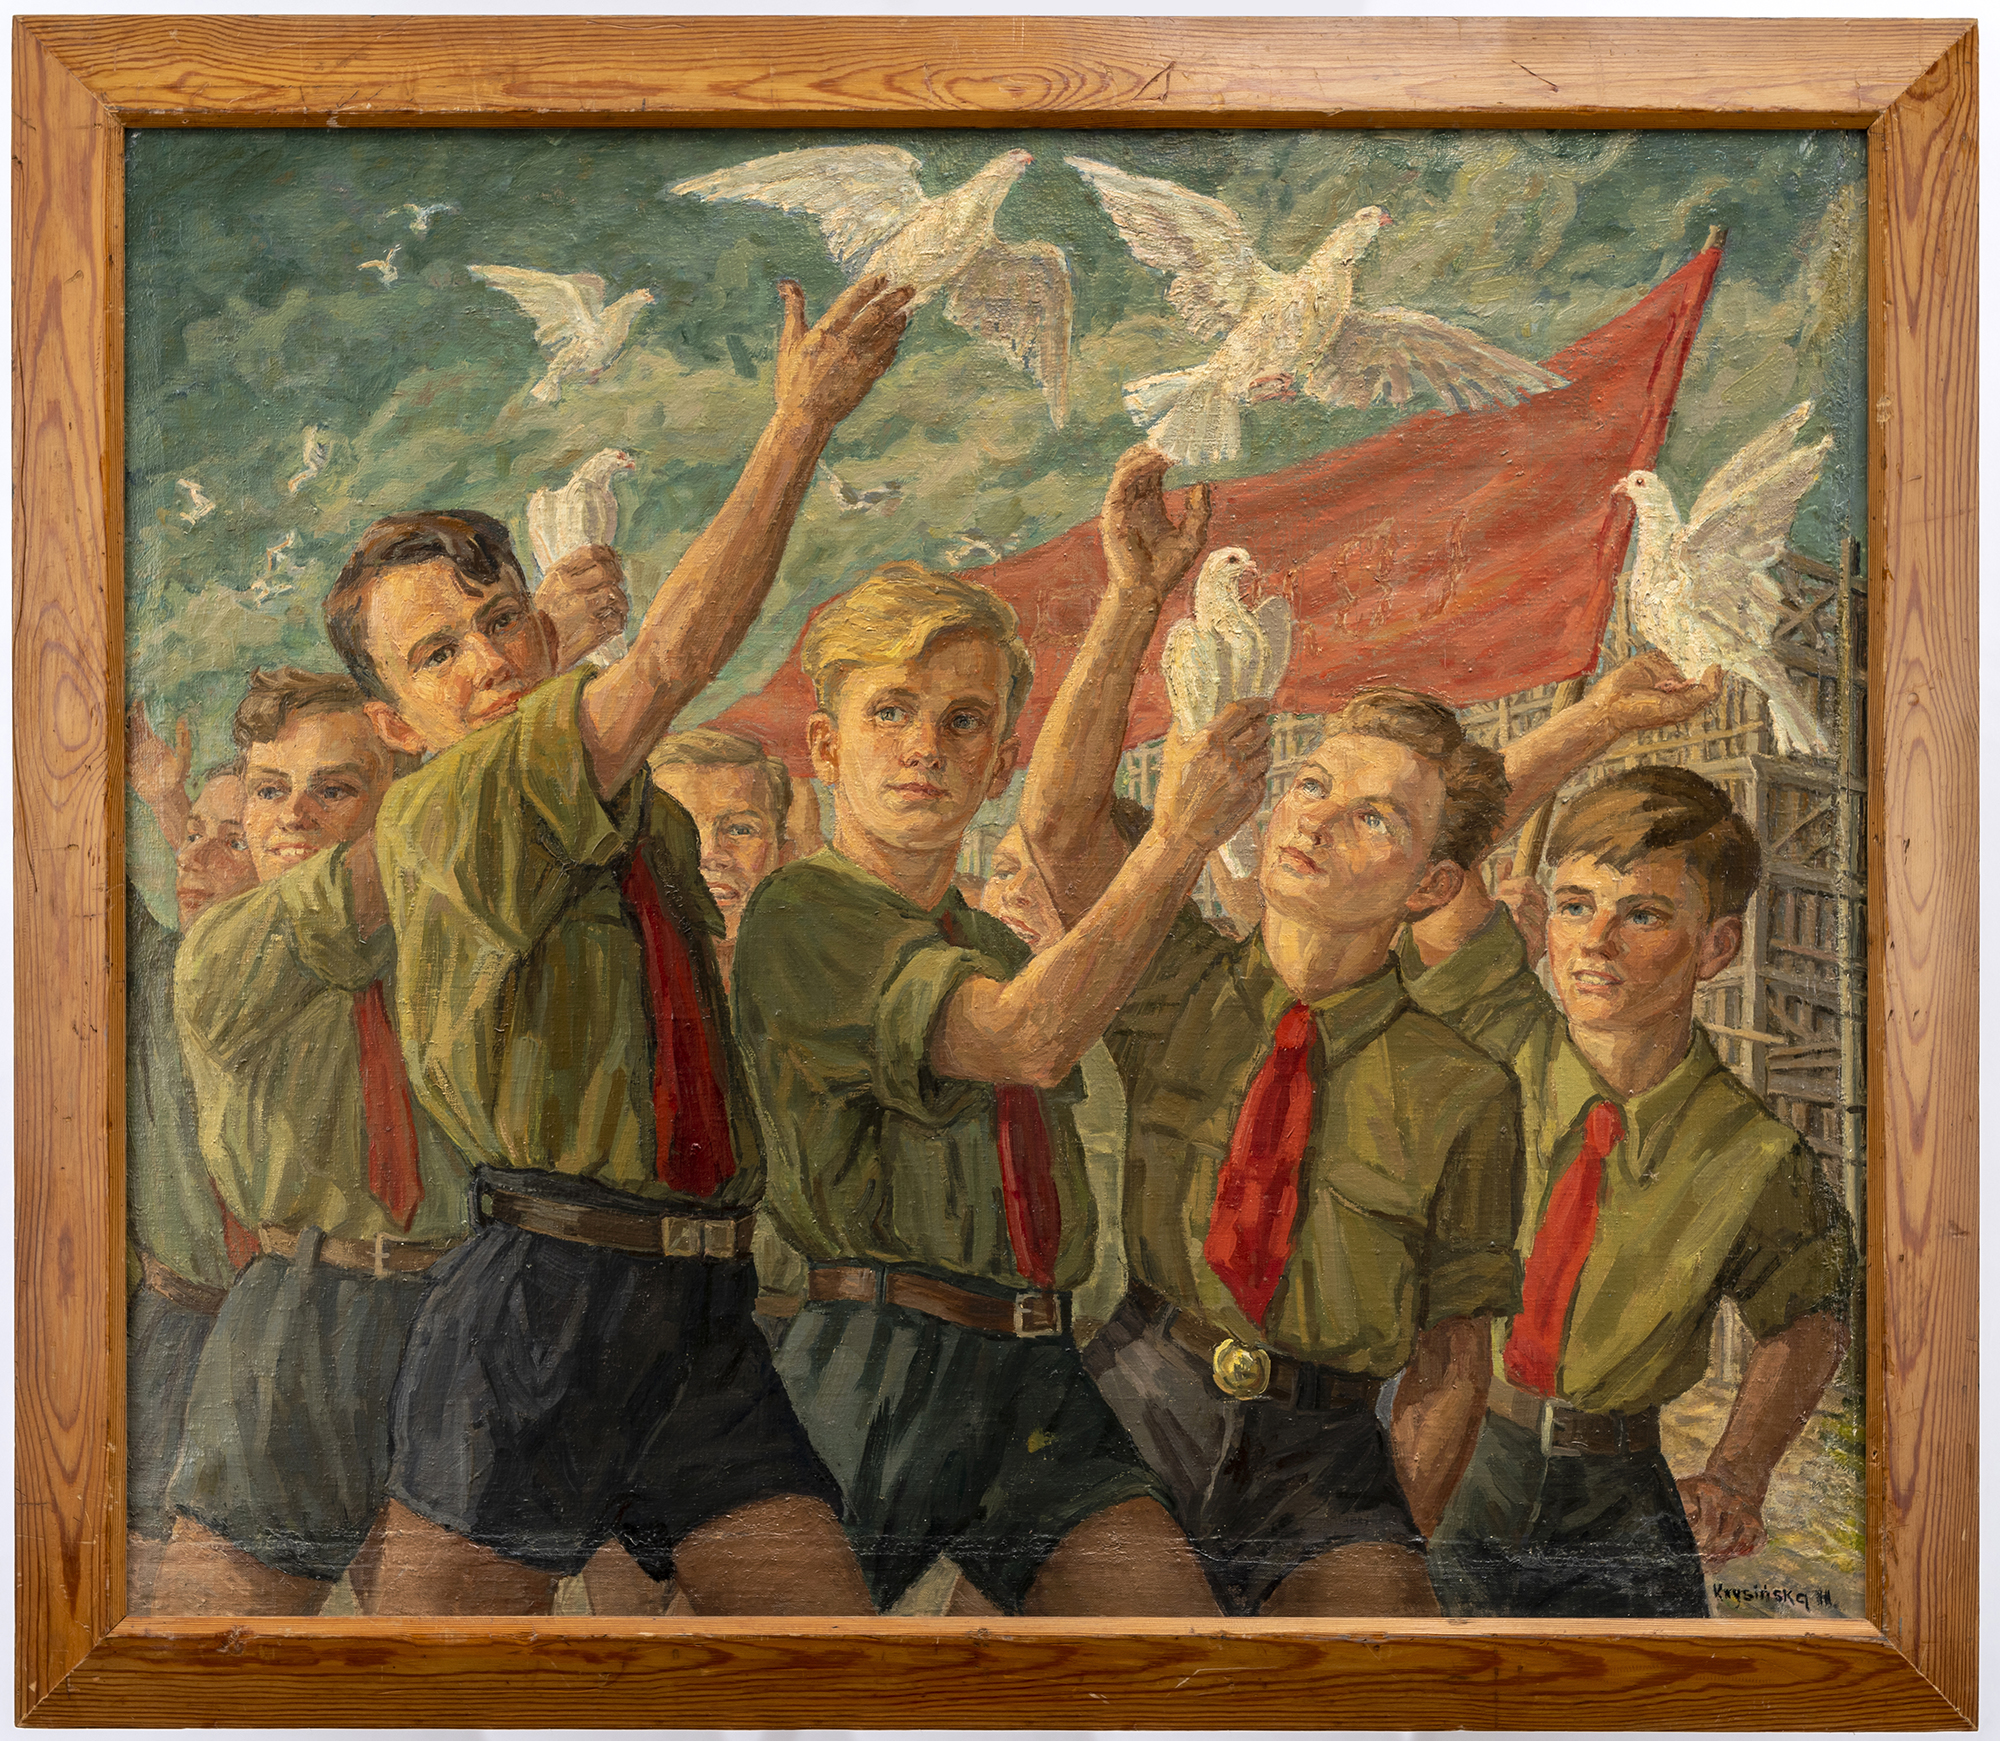 Obraz namalowany farbami olejnymi, około 1951 roku, autorstwa Haliny Kowalskiej-Krysińskiej, zatytułowany Manifestacja pokojowa młodzieży. Grupa młodych chłopców z wzniesionymi do góry rękami, z których wypuszczają białe gołębie. Chłopcy ubrani są w szarobrązowe, krótkie spodenki, zielone koszule z podwiniętymi rękawami i czerwone krawaty. W tle niebieskozielone niebo z jaśniejszymi chmurami.